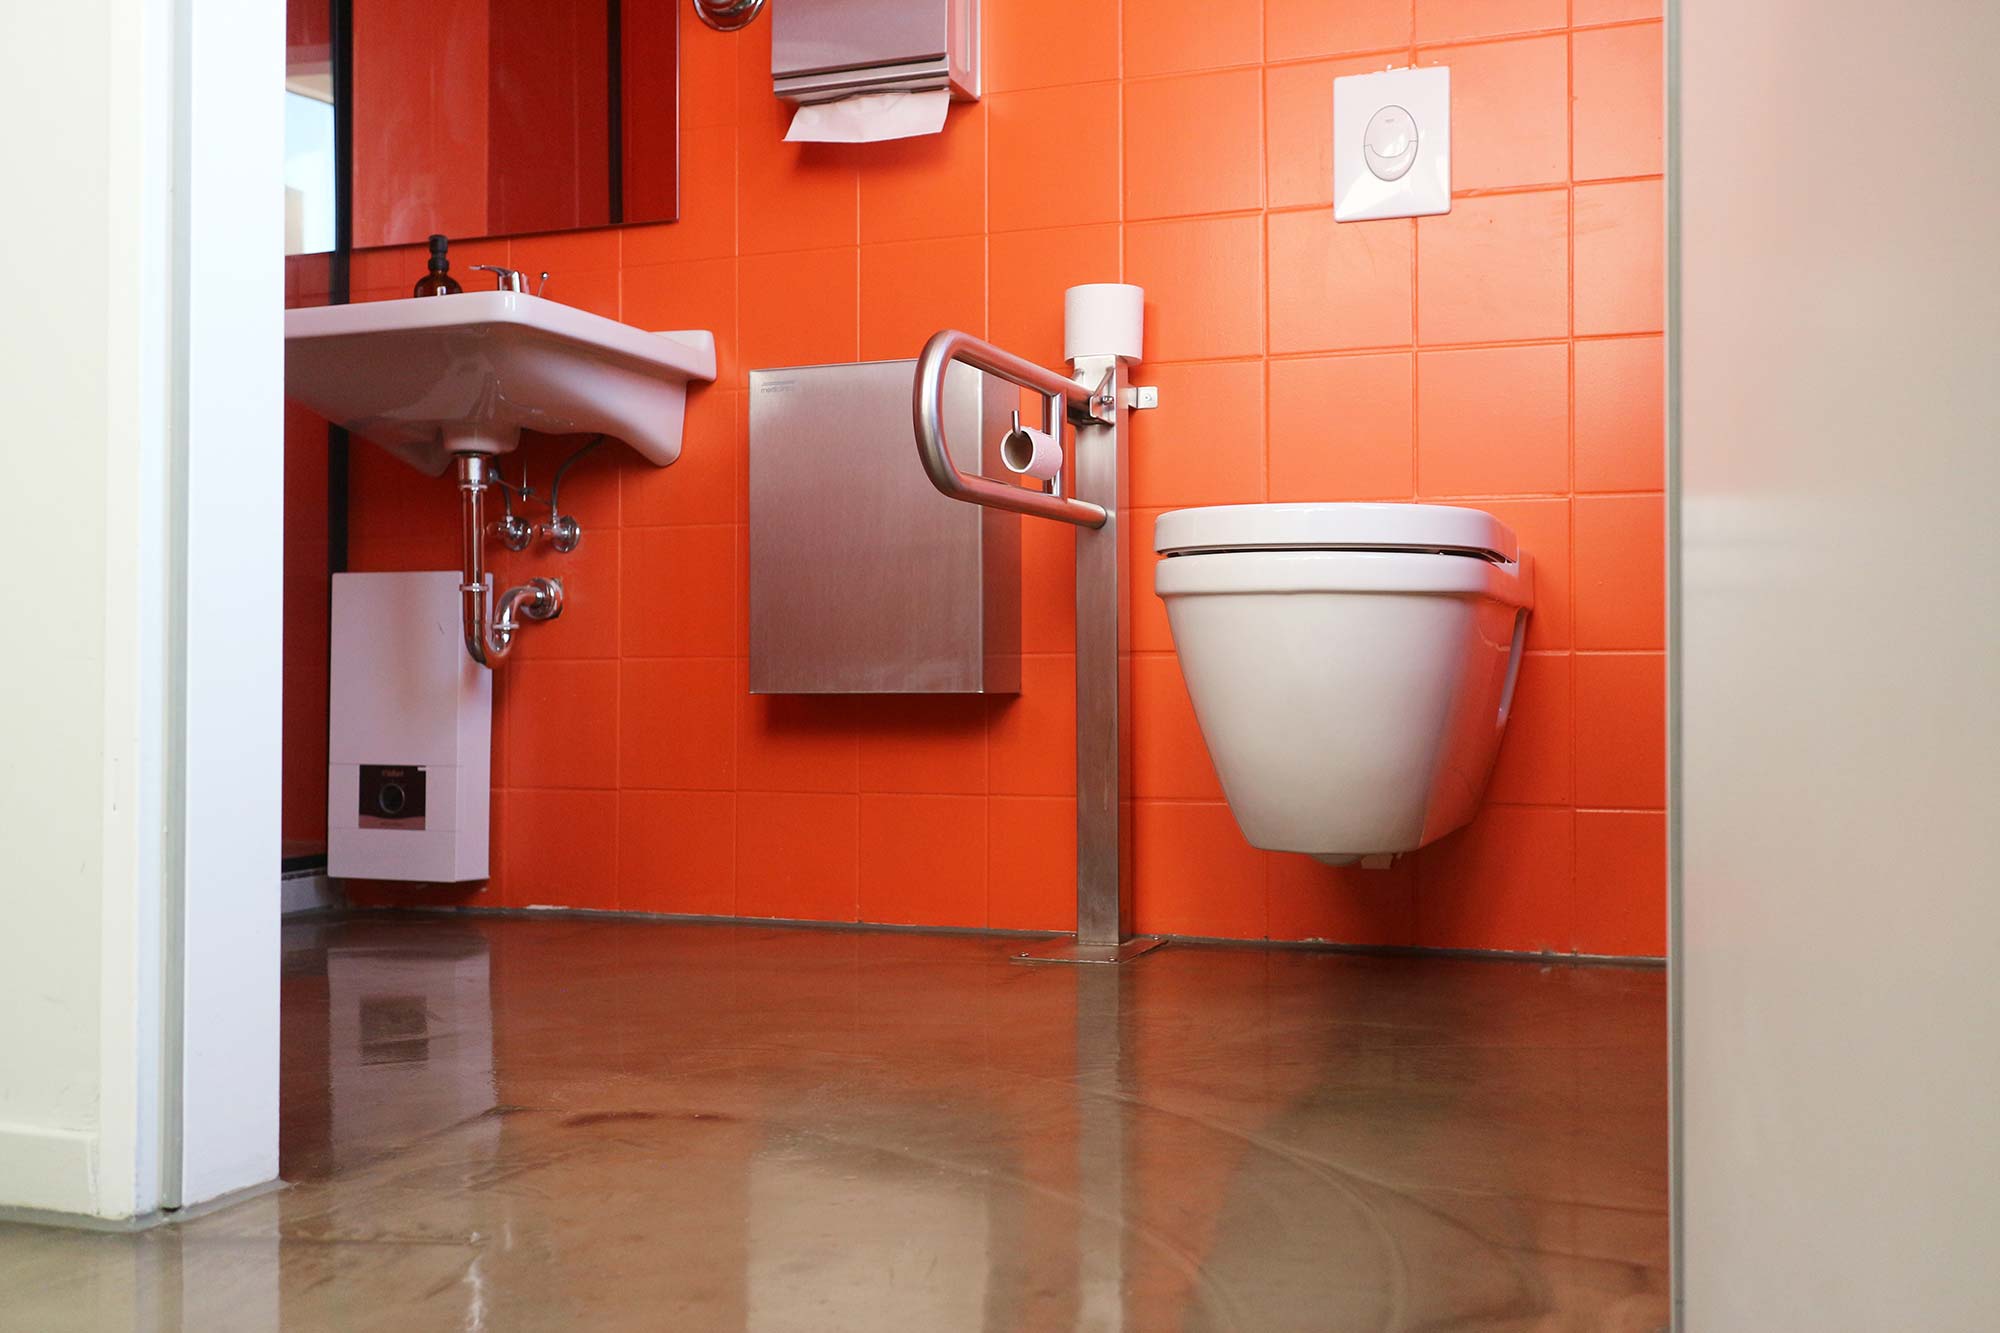 Die behindertengerechte Toilette ist mit grell-orangenen Kacheln gefließt; die Amaturen (Toilette und Waschbecken) sind weiß, während der Toilettenstützgriff, der an der Wand befestigte Mülleimer und der Handtuchspender silber sind; über dem Waschbecken hängt ein Spiegel